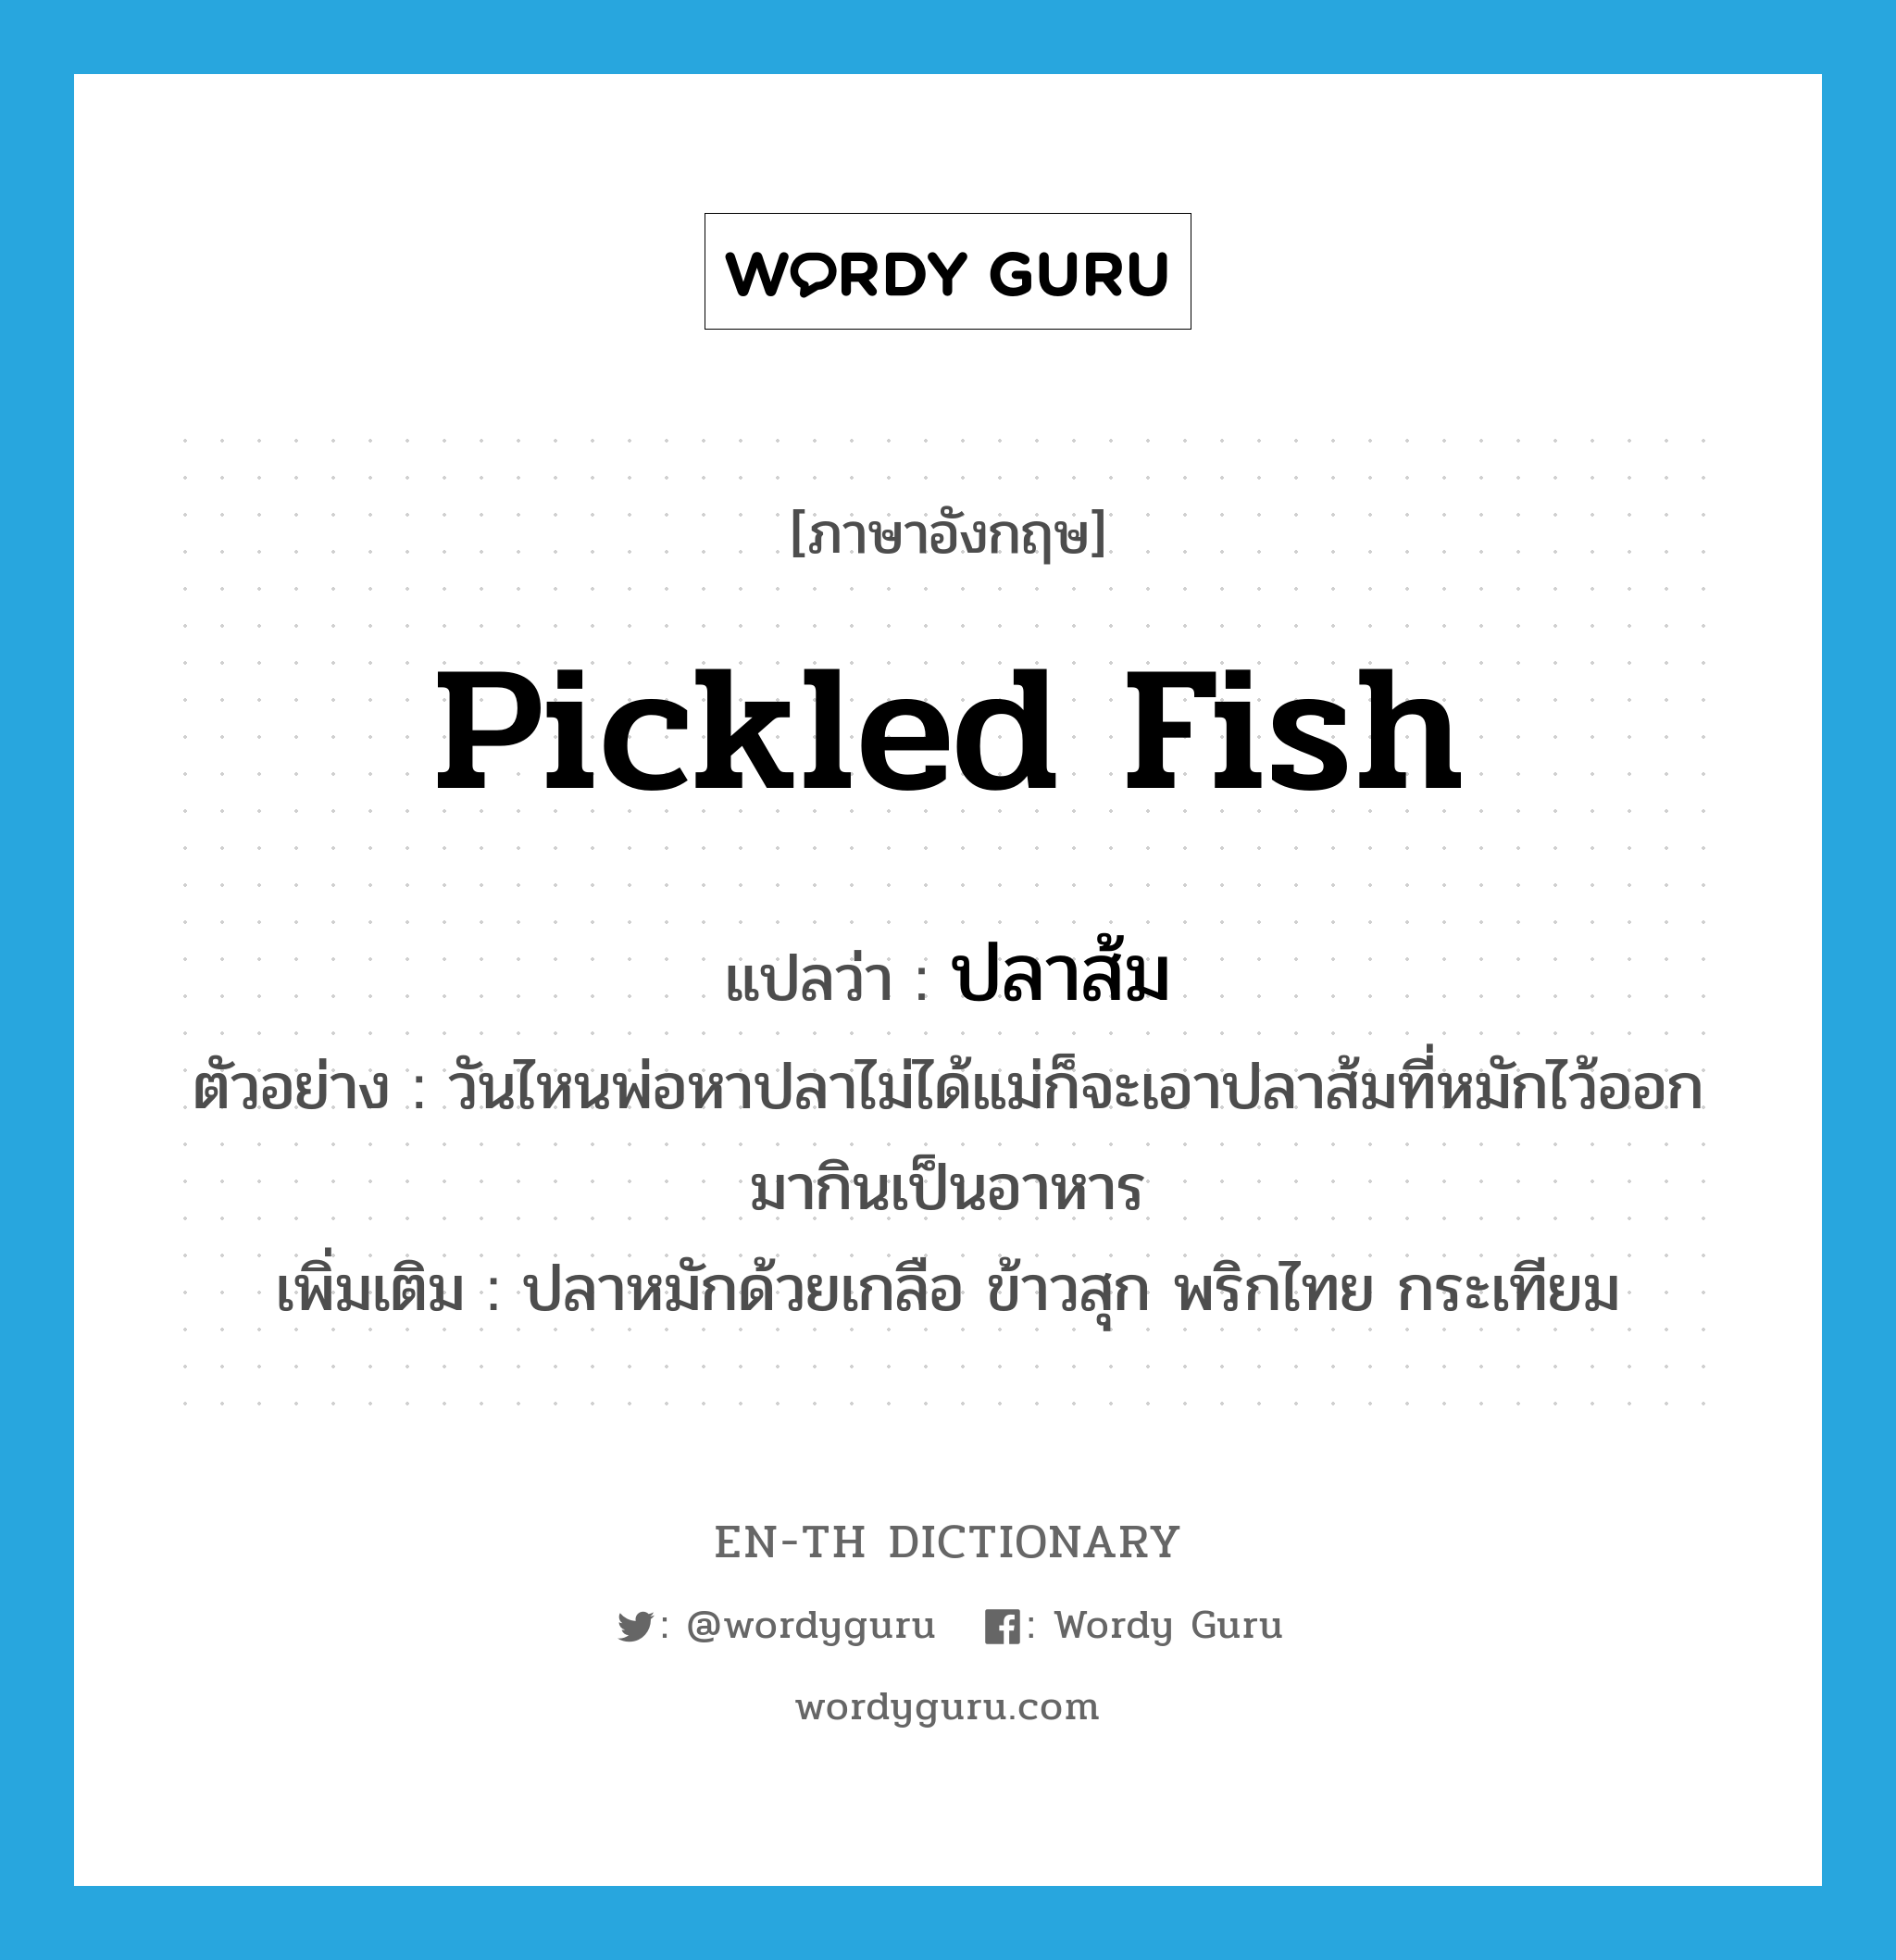 ปลาส้ม ภาษาอังกฤษ?, คำศัพท์ภาษาอังกฤษ ปลาส้ม แปลว่า pickled fish ประเภท N ตัวอย่าง วันไหนพ่อหาปลาไม่ได้แม่ก็จะเอาปลาส้มที่หมักไว้ออกมากินเป็นอาหาร เพิ่มเติม ปลาหมักด้วยเกลือ ข้าวสุก พริกไทย กระเทียม หมวด N